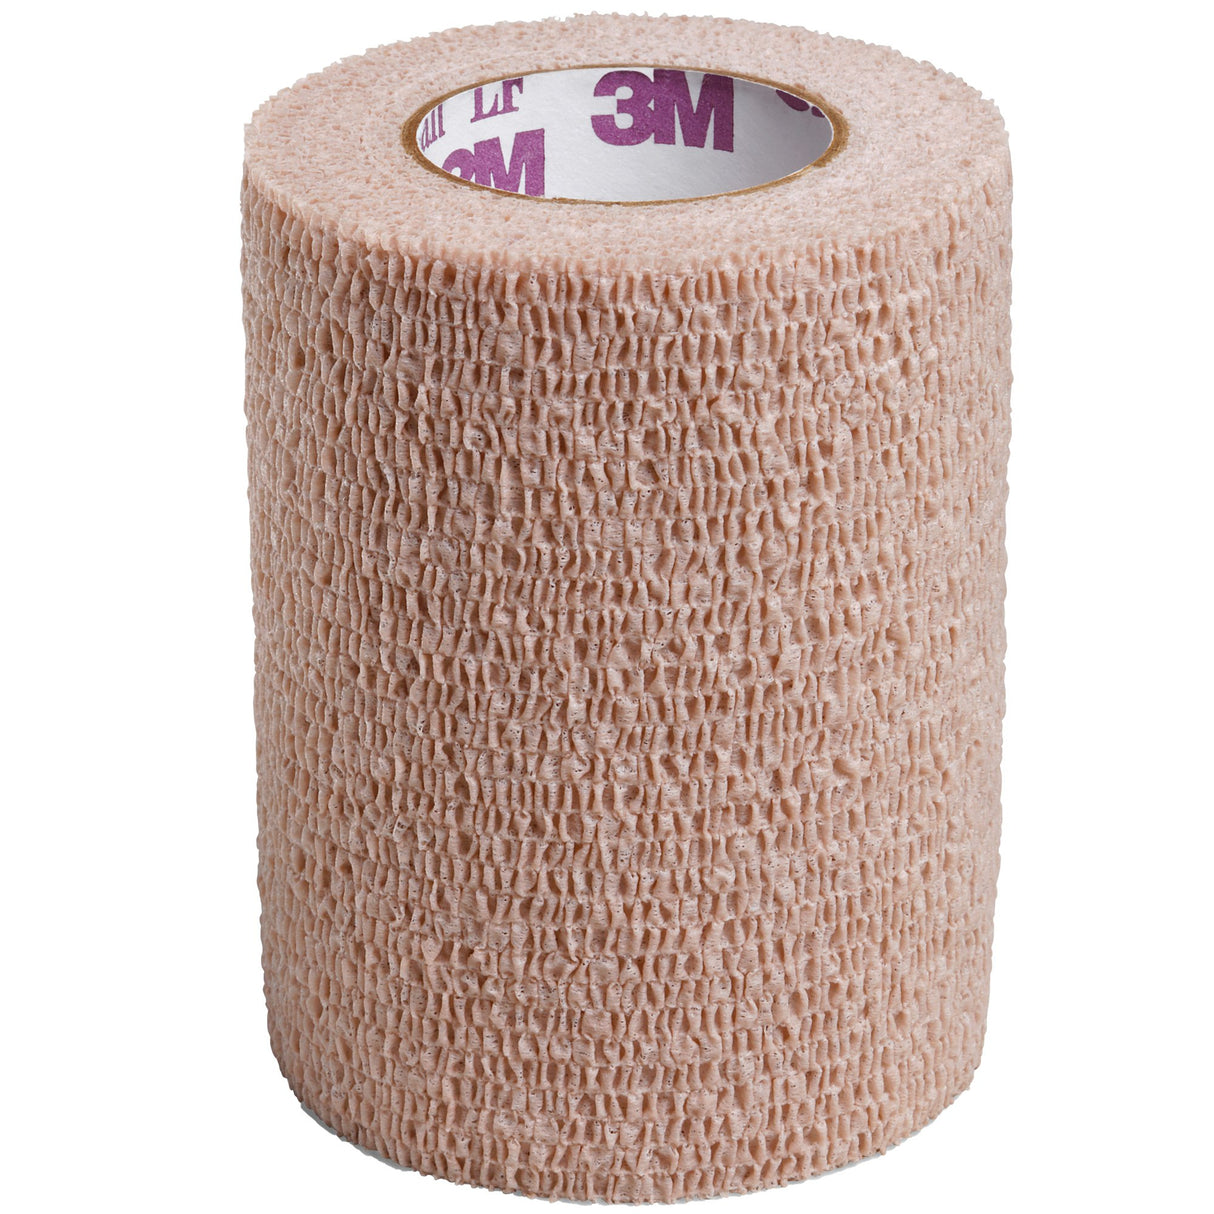 3M™ Coban™ LF Self-adherent Closure Cohesive Bandage, 3 Inch x 5 Yard, Tan